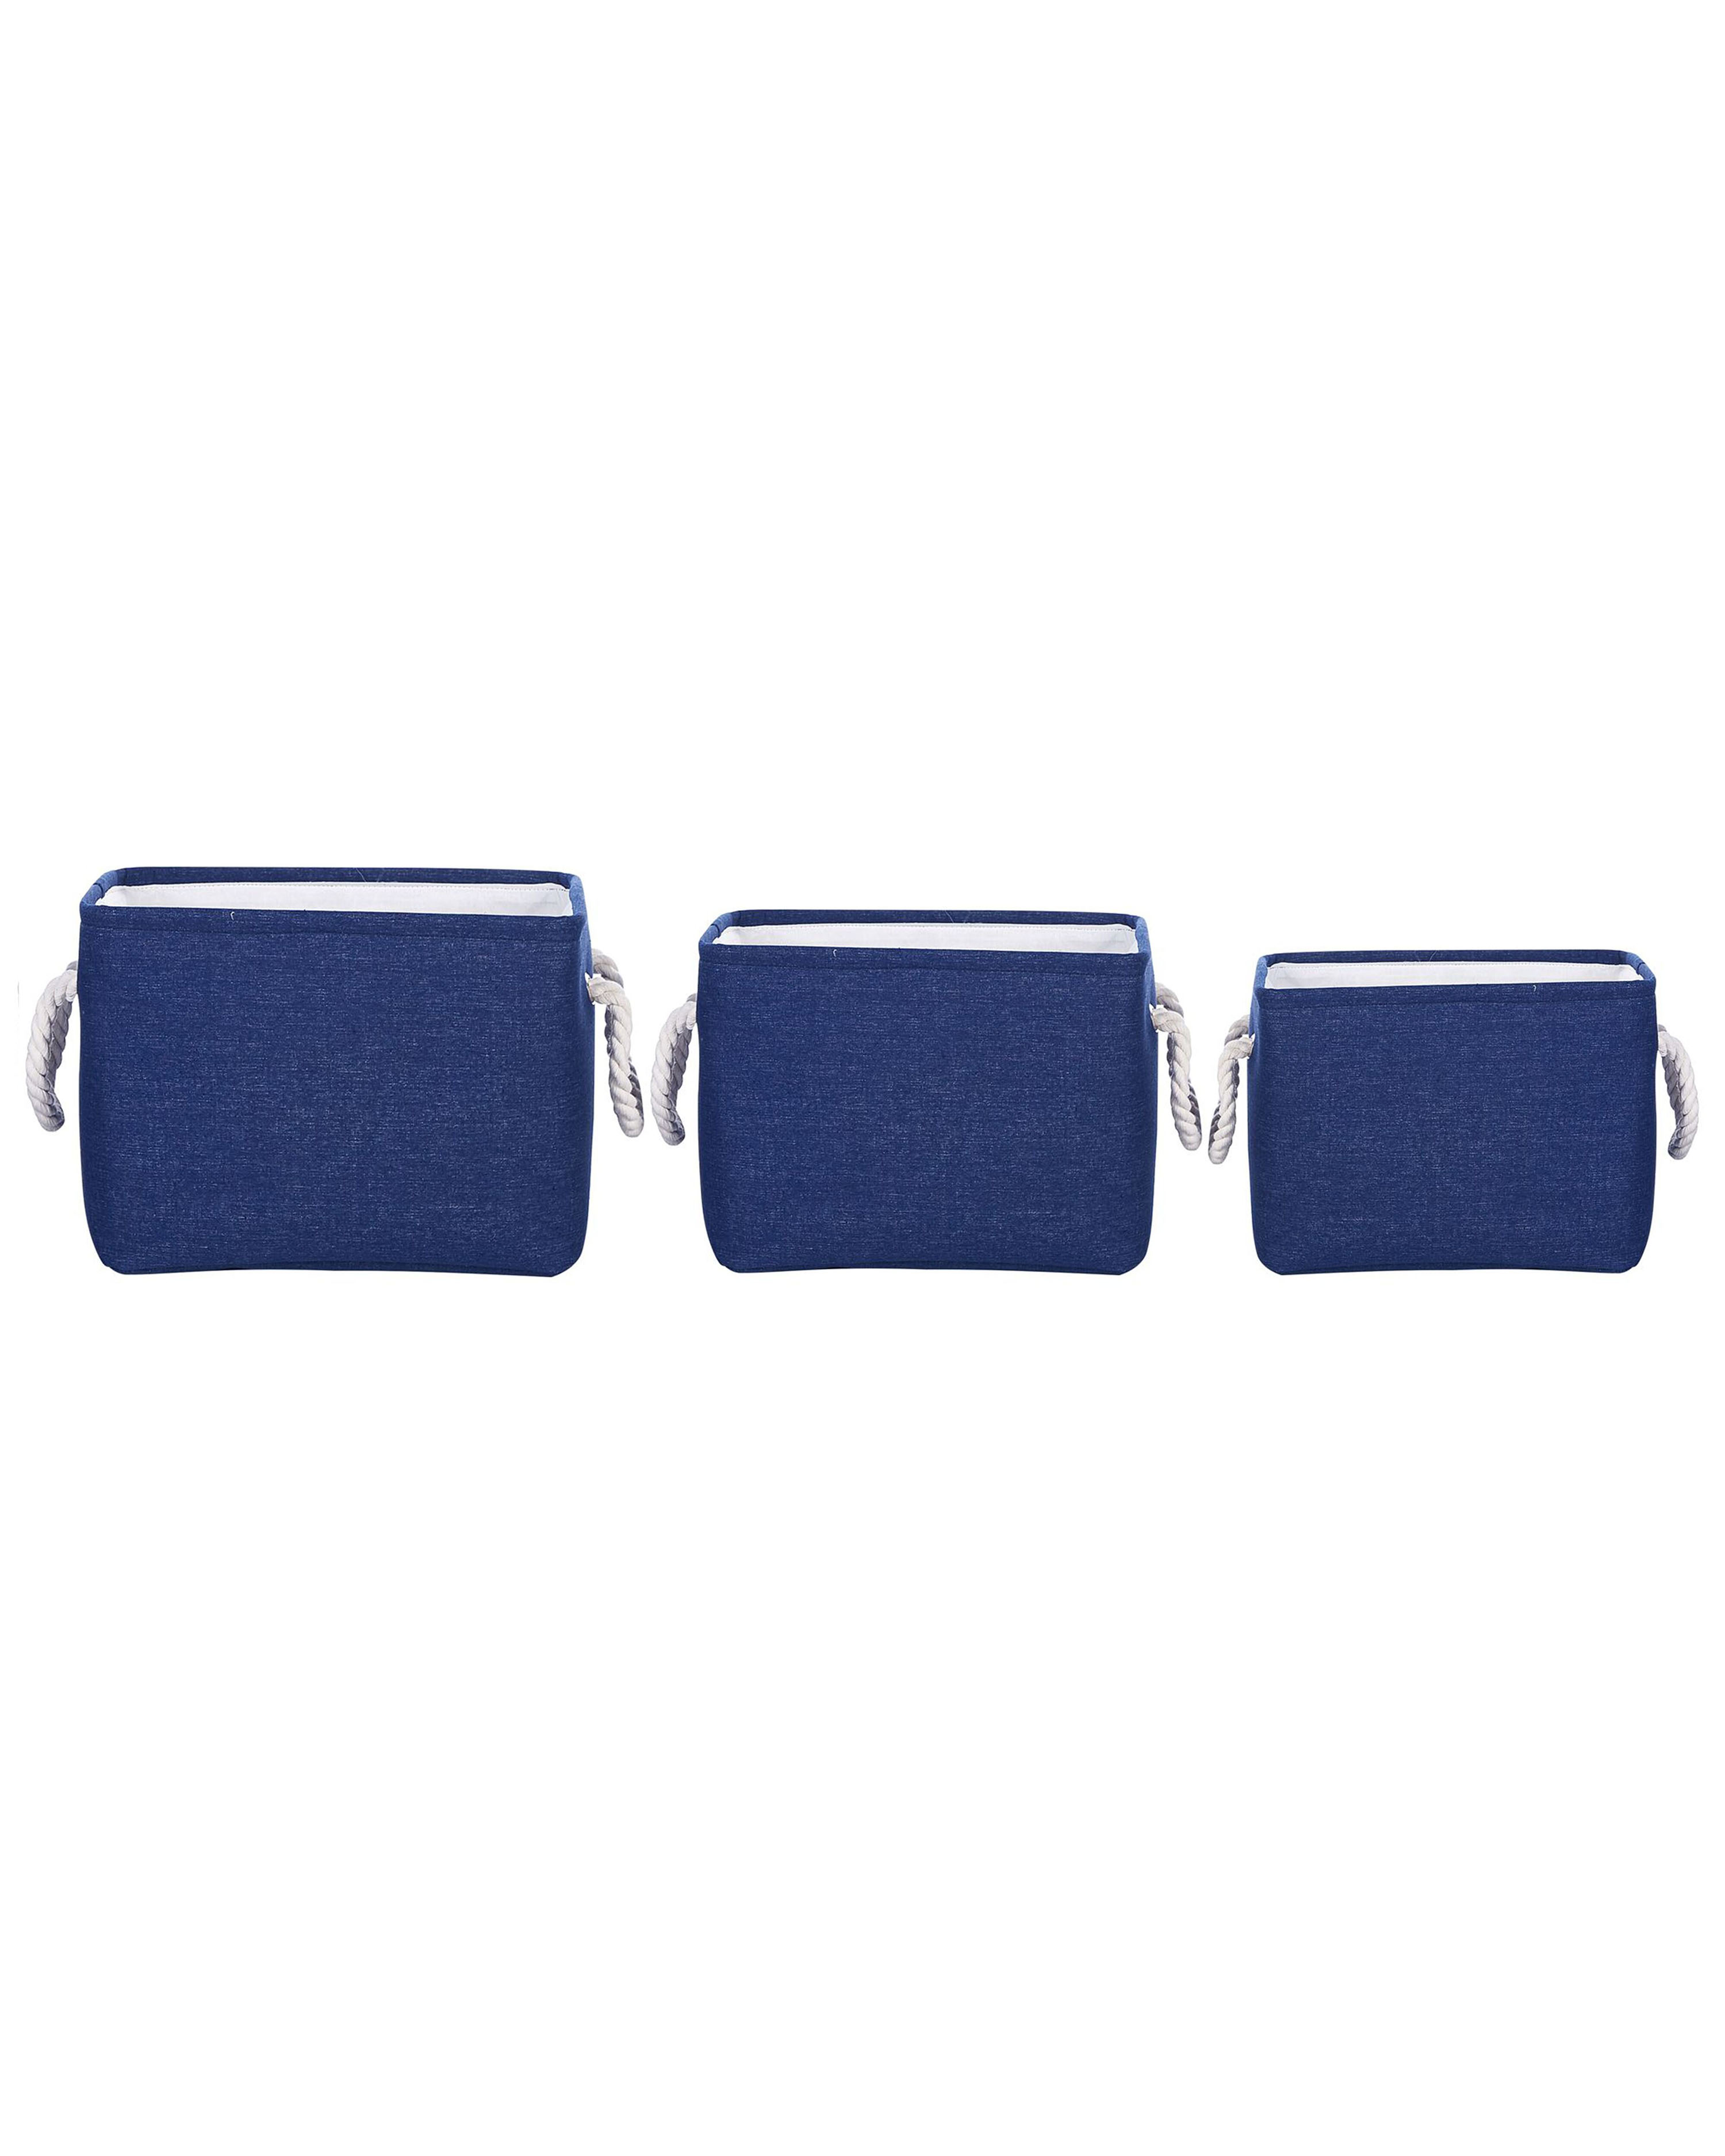 Conjunto de 3 cestas de poliéster azul marino/blanco DARQAB_849740